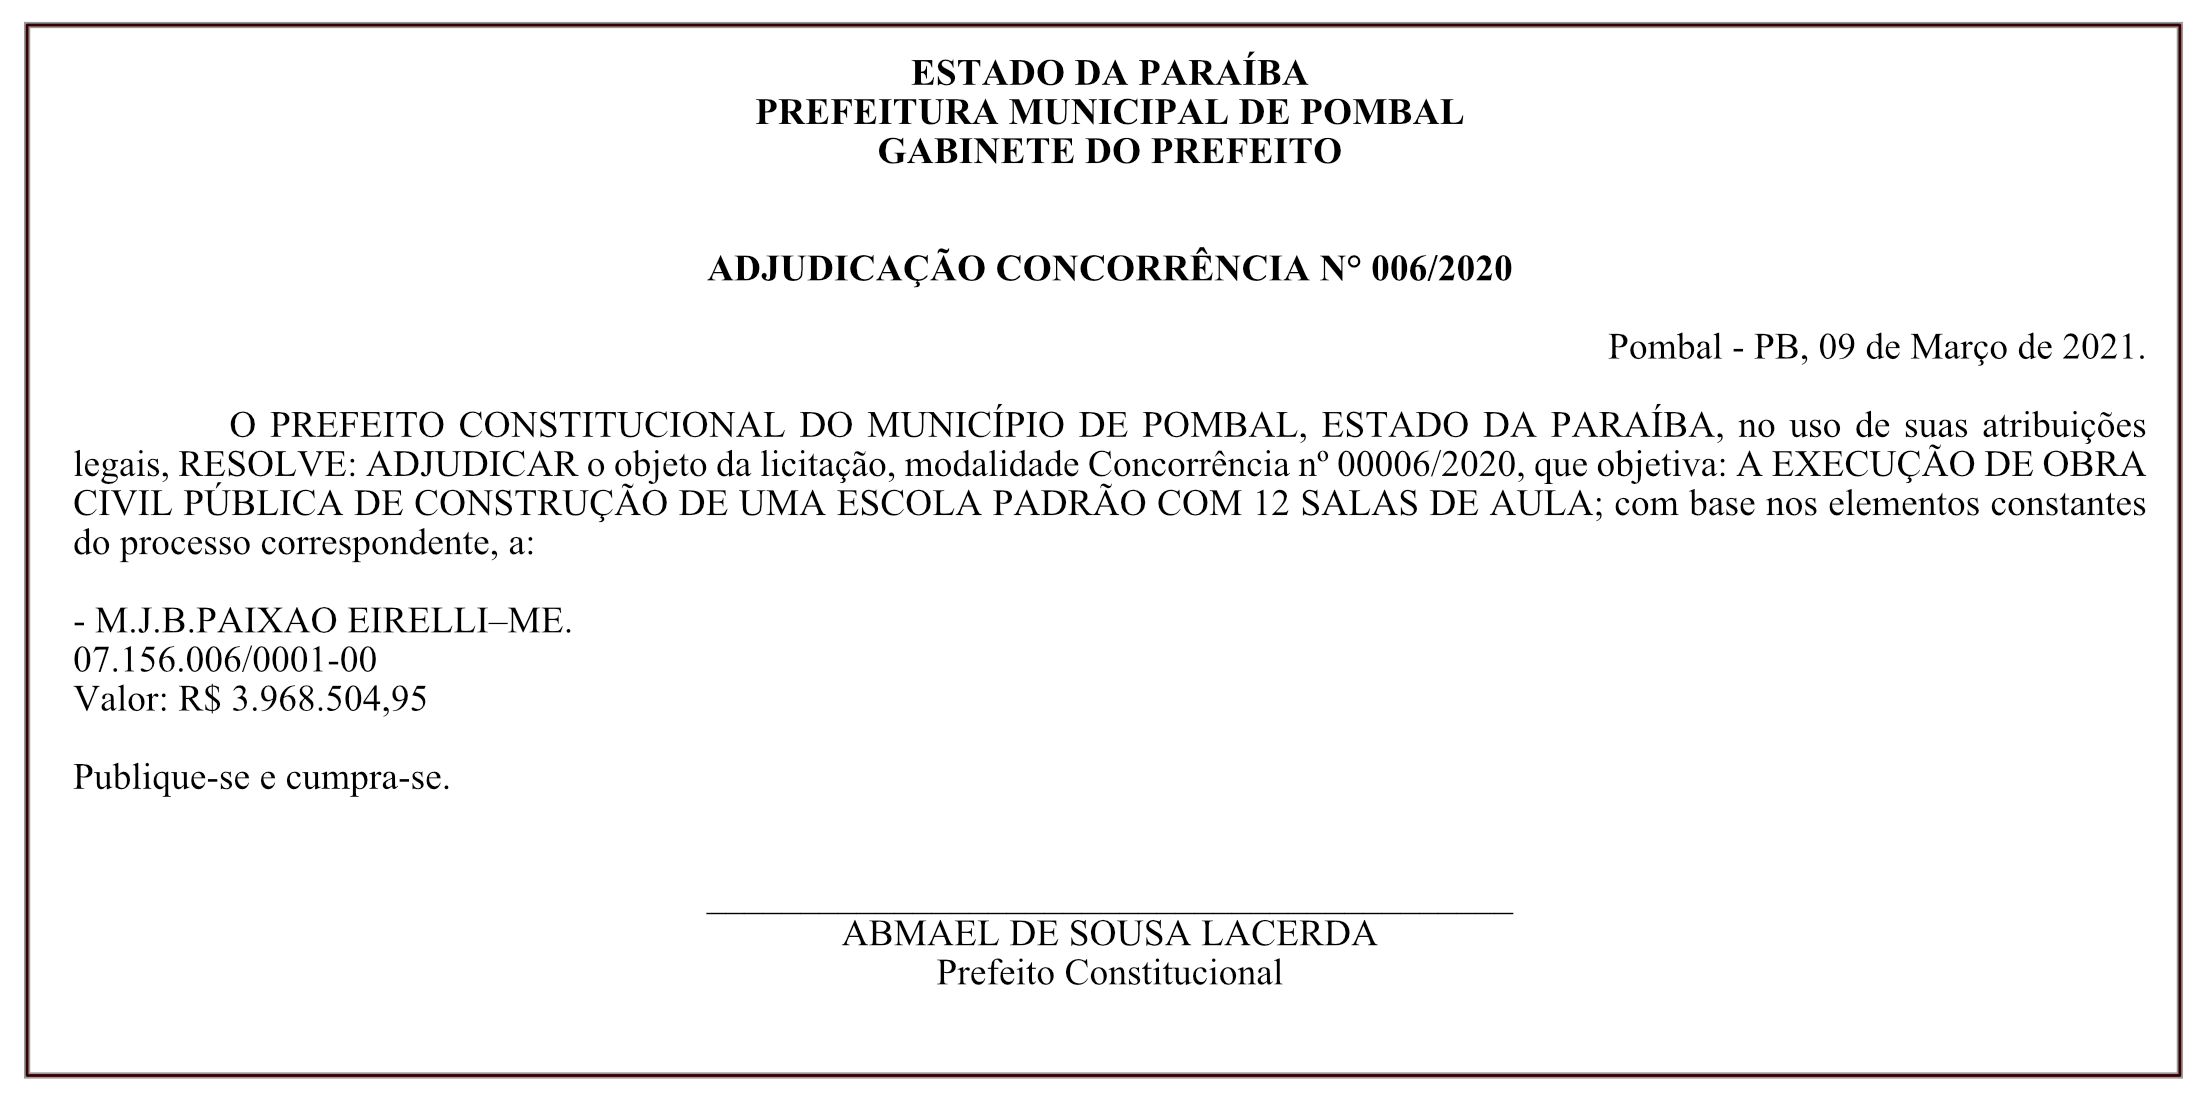 PREFEITURA MUNICIPAL DE POMBAL – GABINETE DO PREFEITO – ADJUDICAÇÃO – CONCORRÊNCIA N° 006/2020